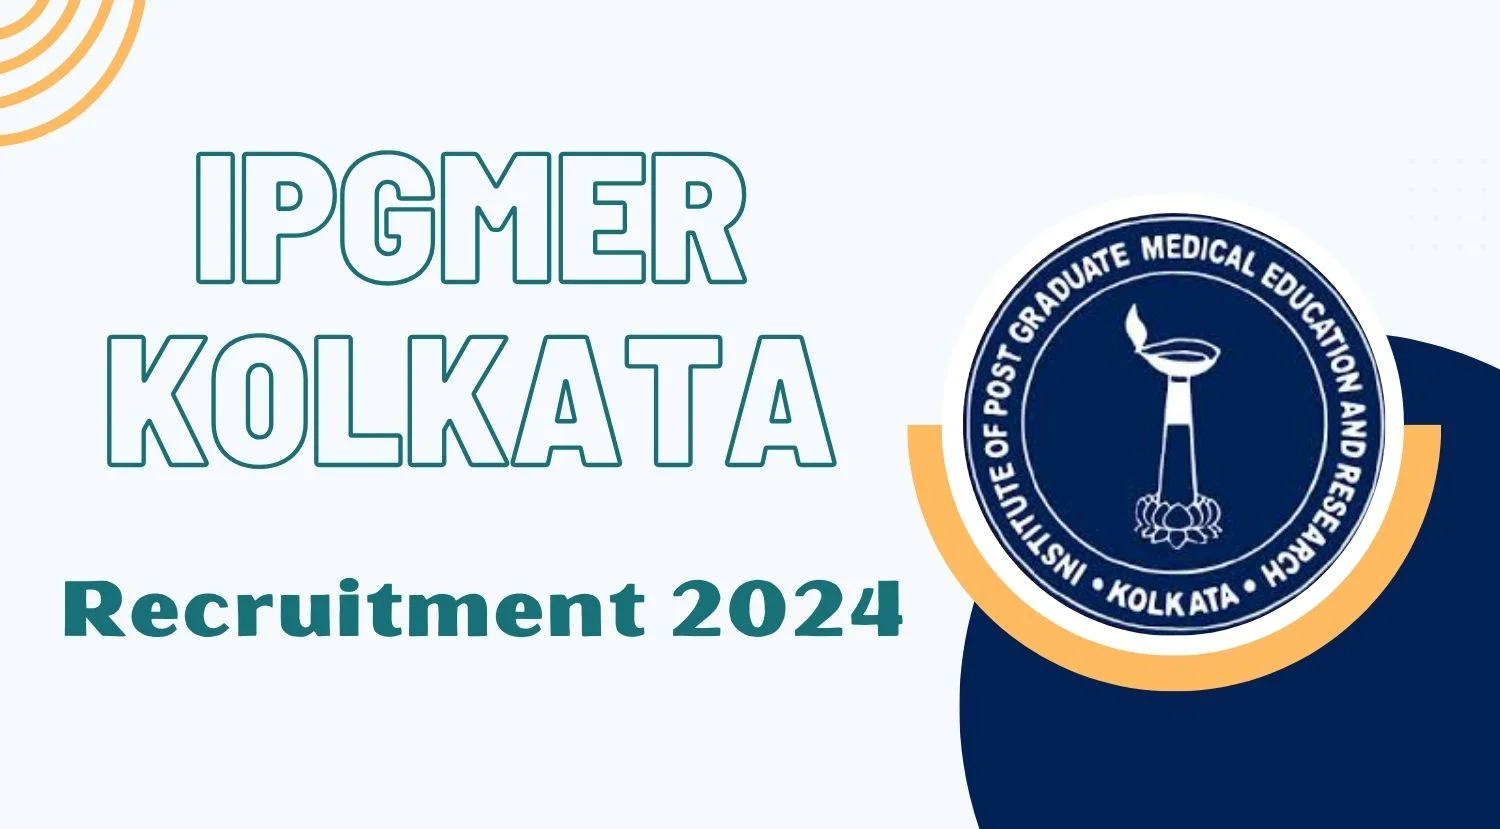 IPGMER Kolkata Recruitment 2024